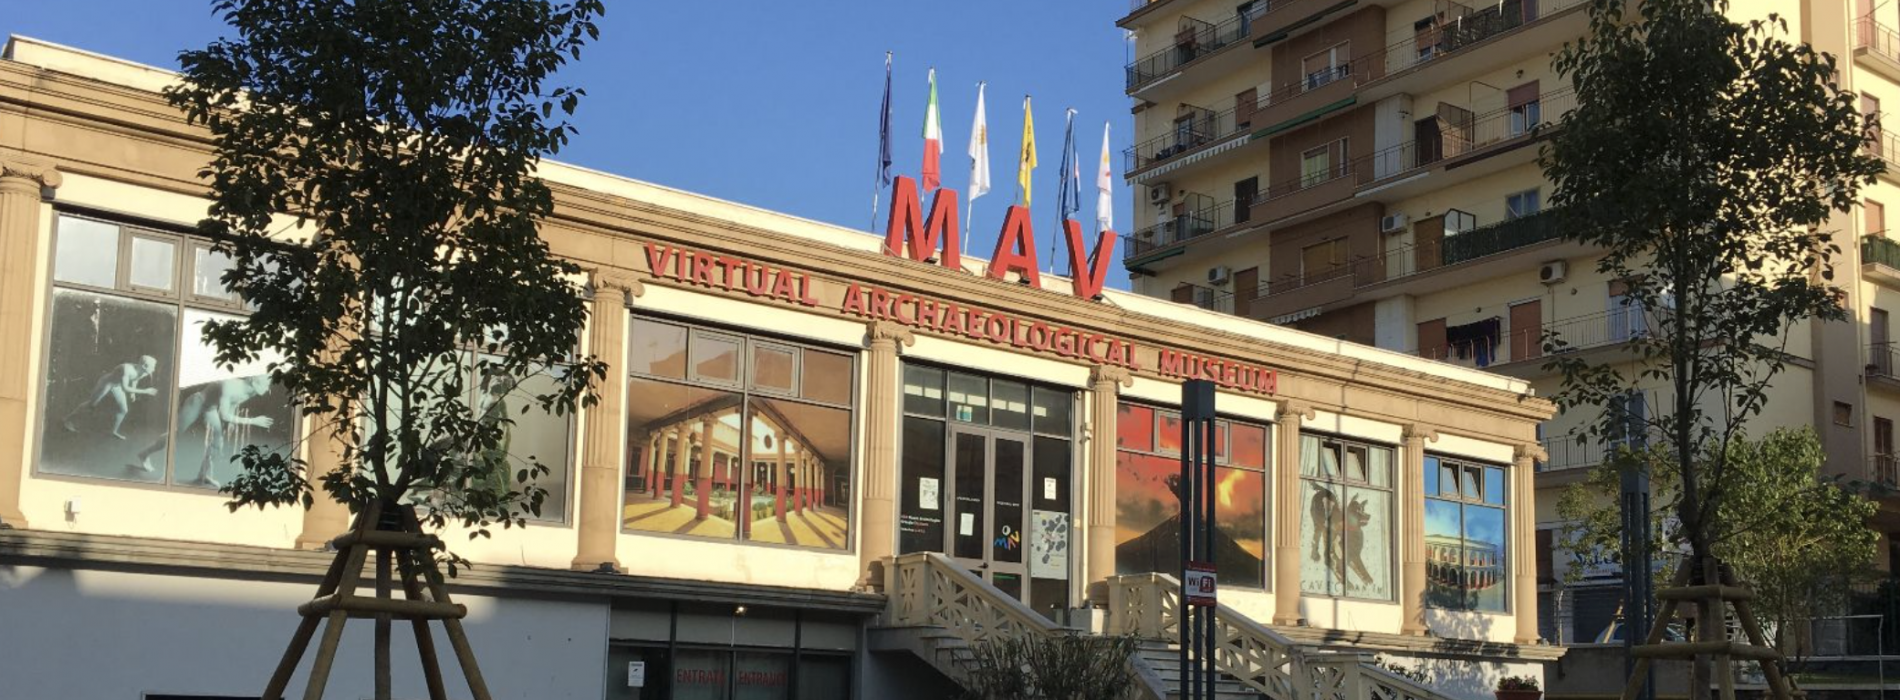 Mav, nuovi orari di apertura per il museo virtuale di Ercolano